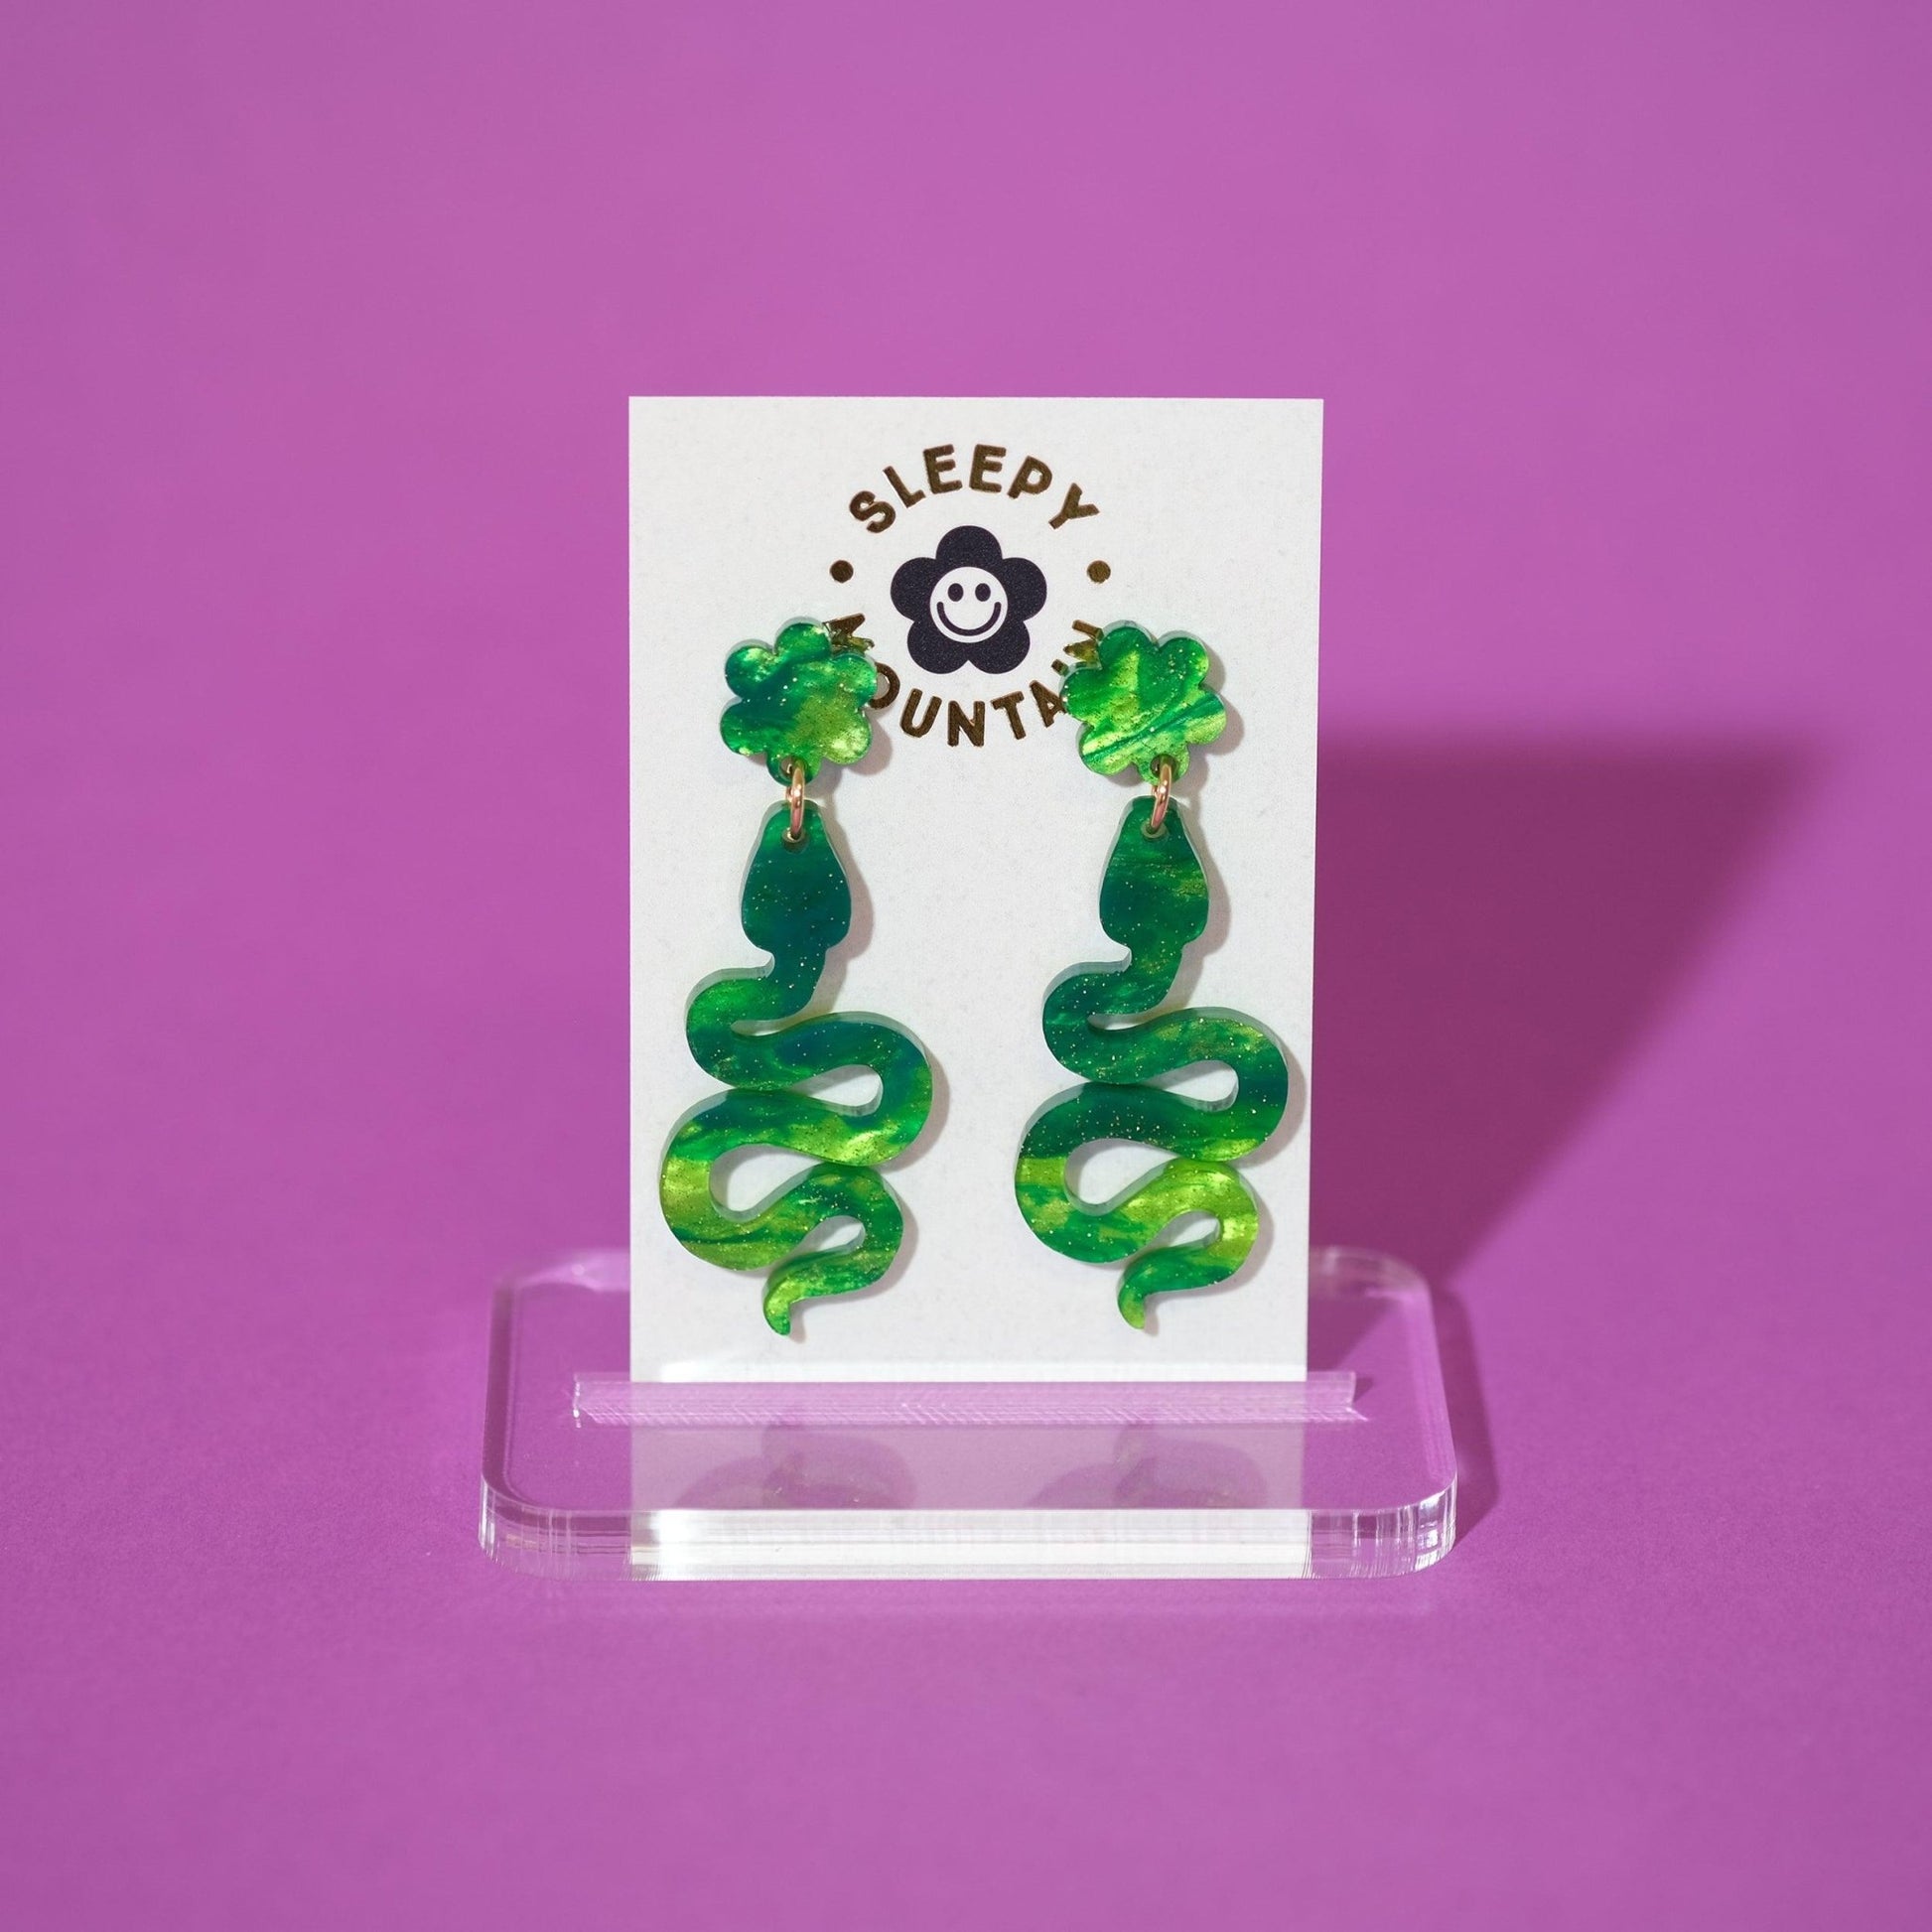 Swirly green Snake Earrings - Sleepy Mountain